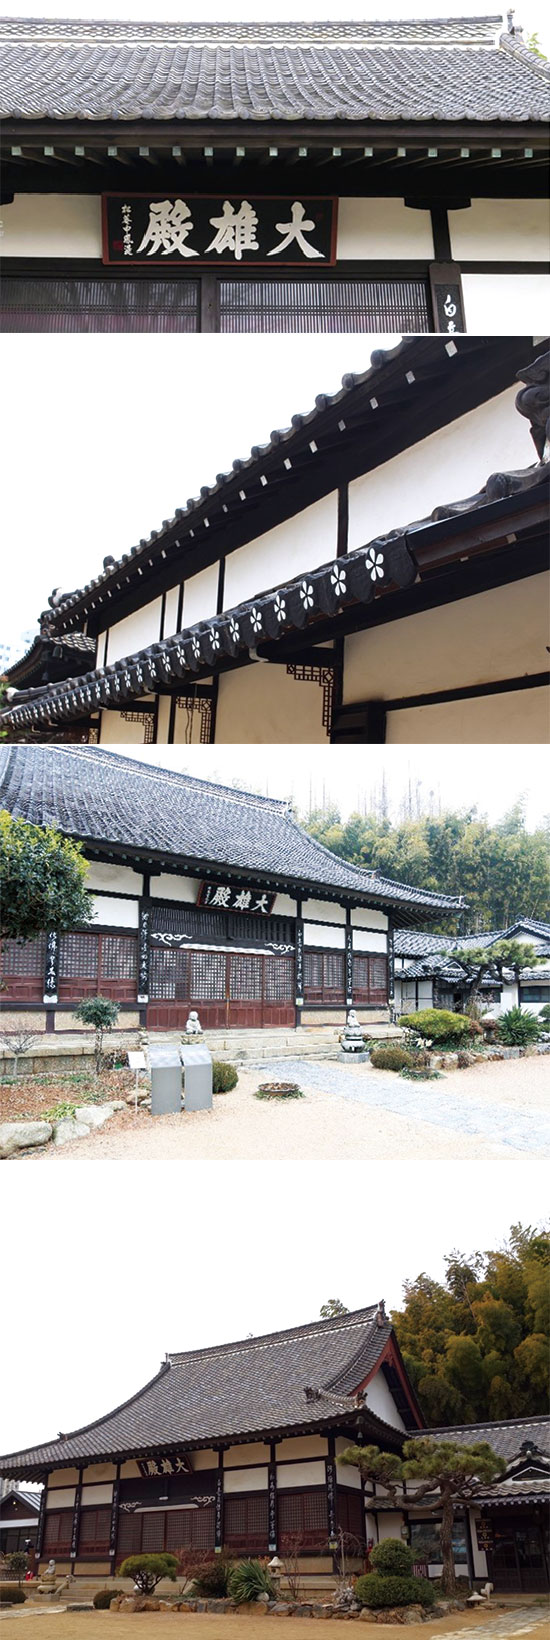 담으로 둘러싸인 동국사 경내에 들어서면 이국적인 일본식 사찰 건축을 만나게 된다.